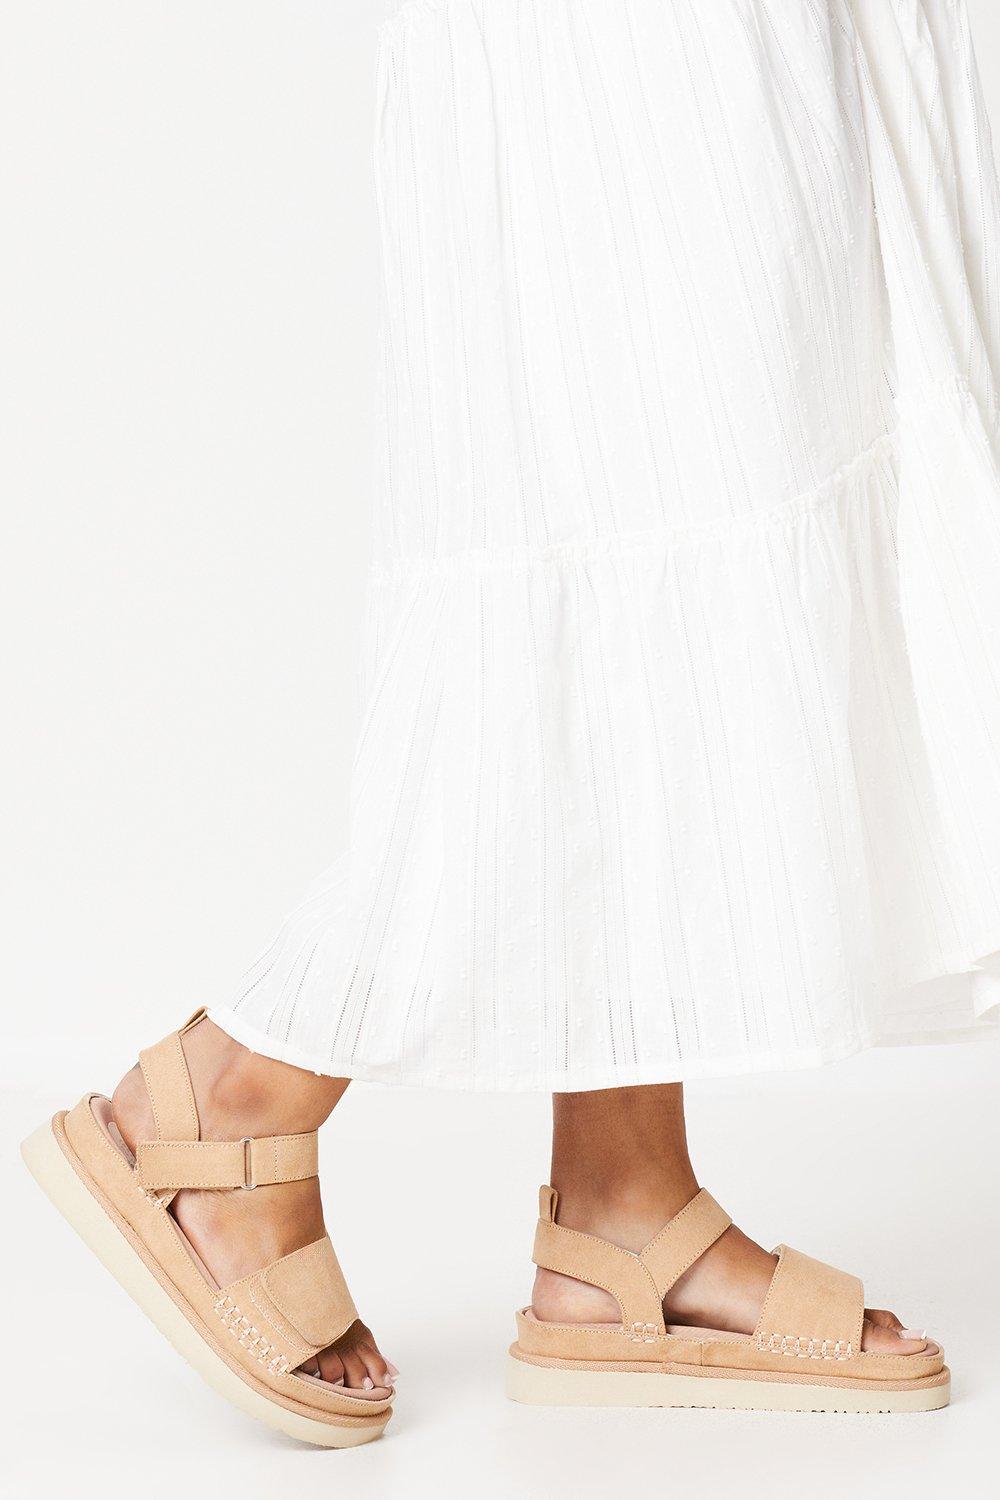 Womens Good For The Sole: Wide Fit Magnus Comfort Flatform Adjustable Strap Sandals